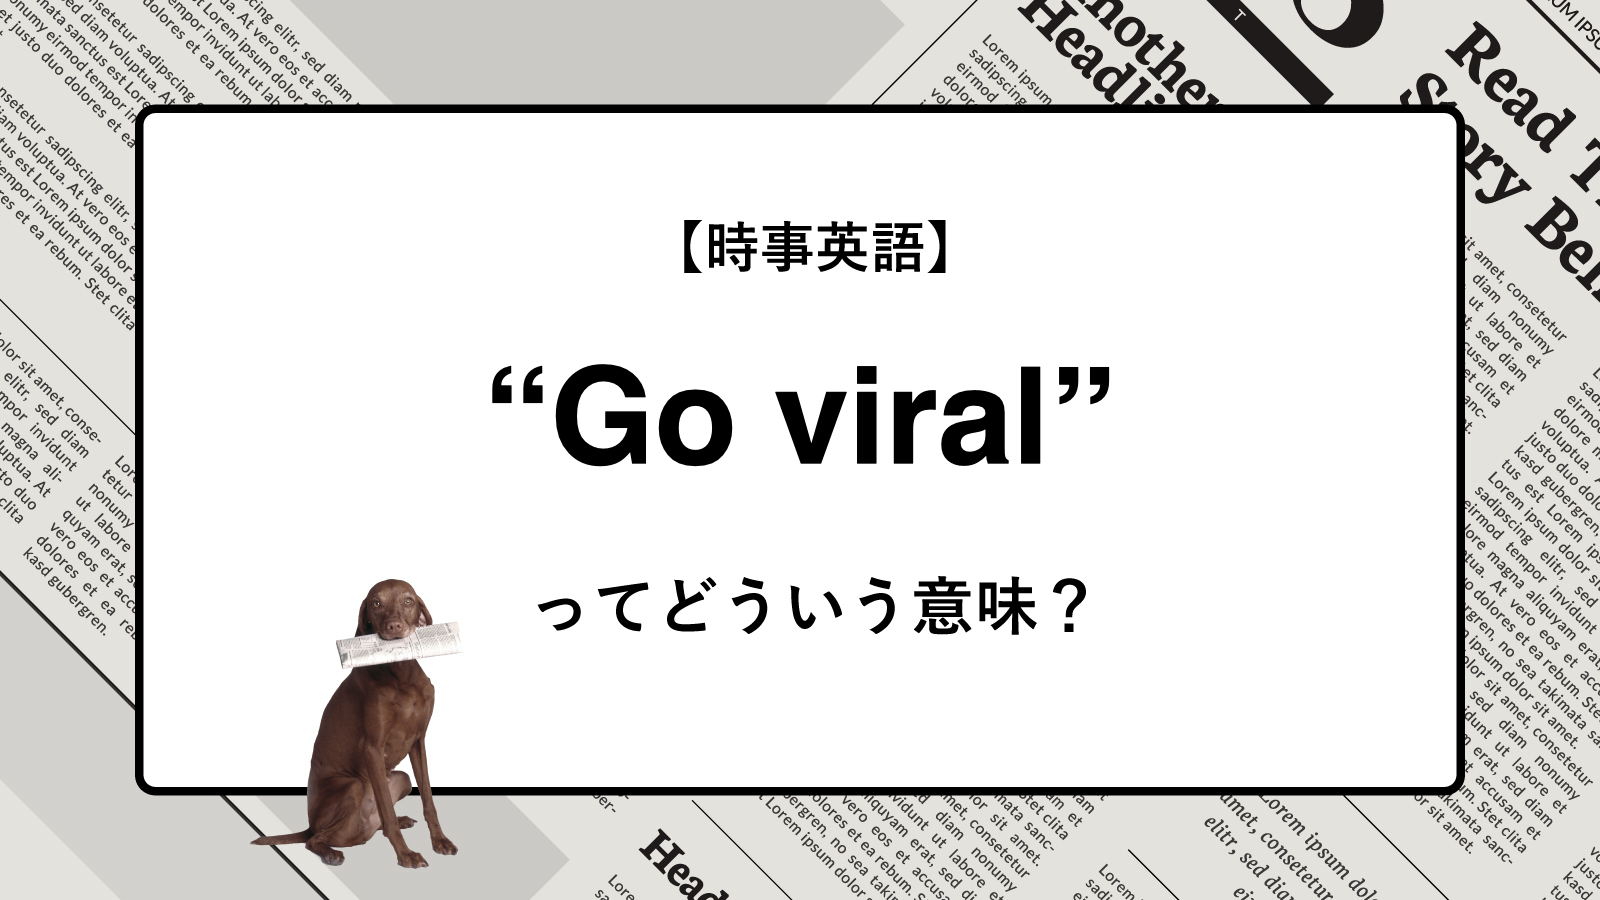 【時事英語】“Go viral” ってどういう意味？ | ニュースの「キーワード」で語彙力を身につける